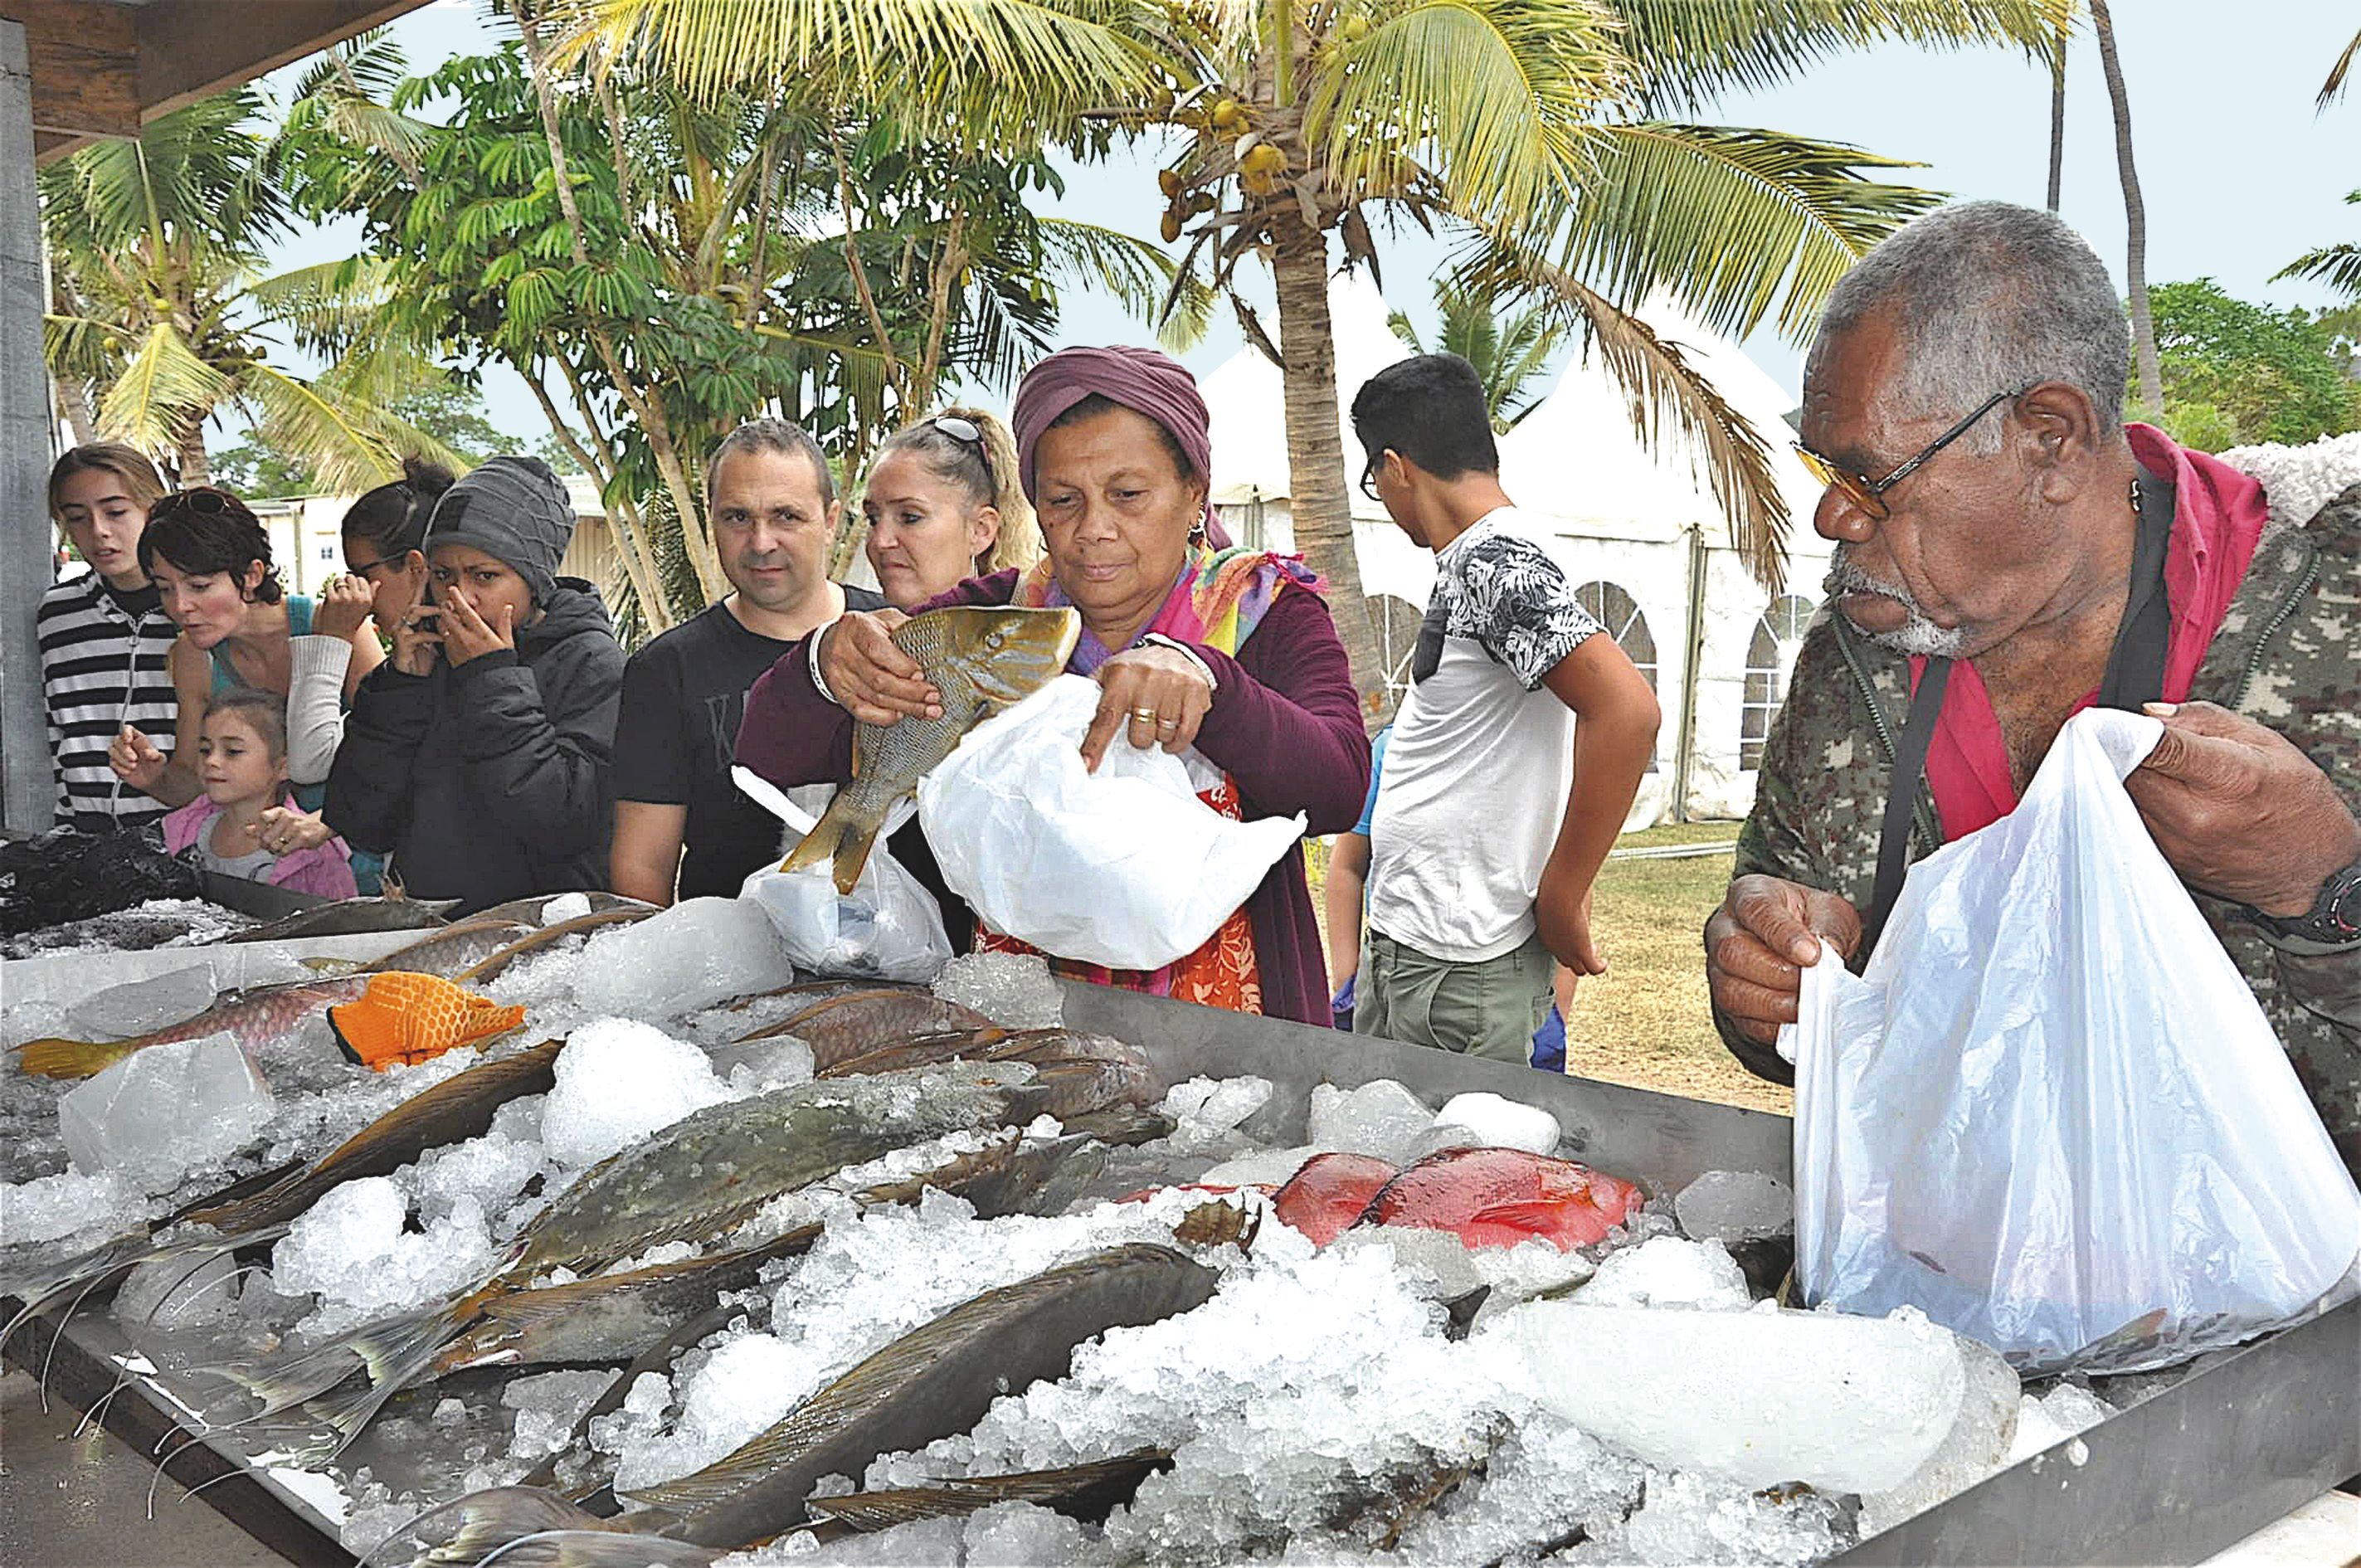 Le stand des pêcheurs de Poum et des îlots a été pris d’assaut dès son ouverture samedi matin. Il y avait près de six cents kilos de picots, dawas, saumonées, becs-de-cane, poulpes, rougets, bénitiers, etc.